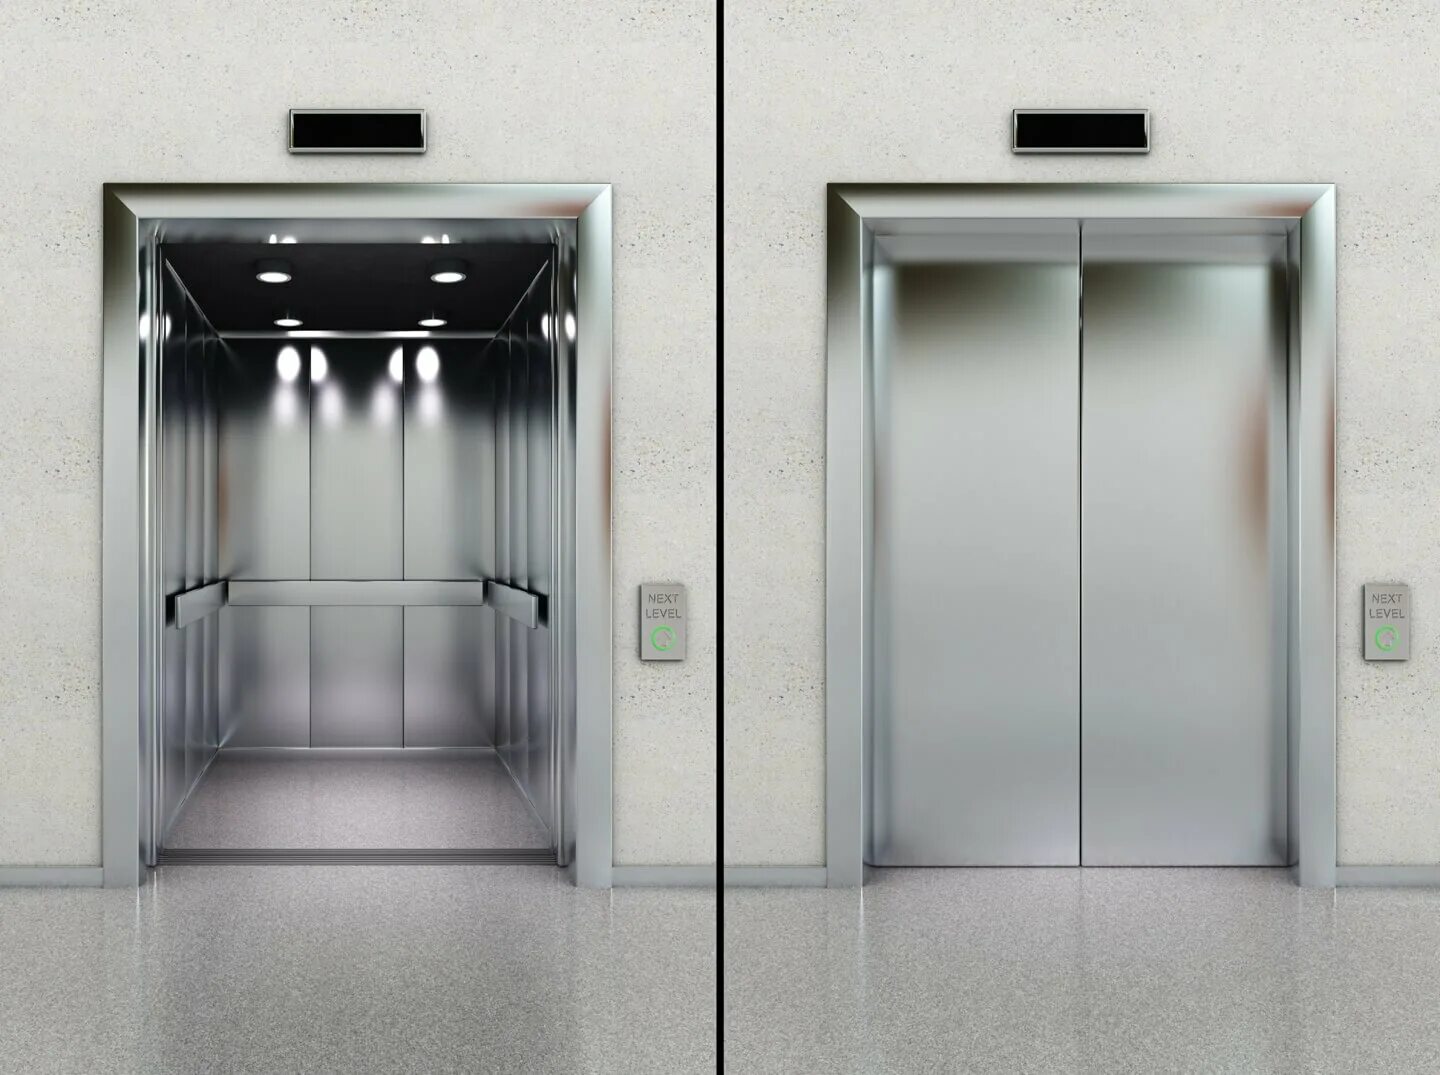 Три вертикальный лифта. Лифт se500m. Лифт Отис пассажирский. Лифтовые двери Отис нержавейки. Лифт с ОТК рытами дверямм.